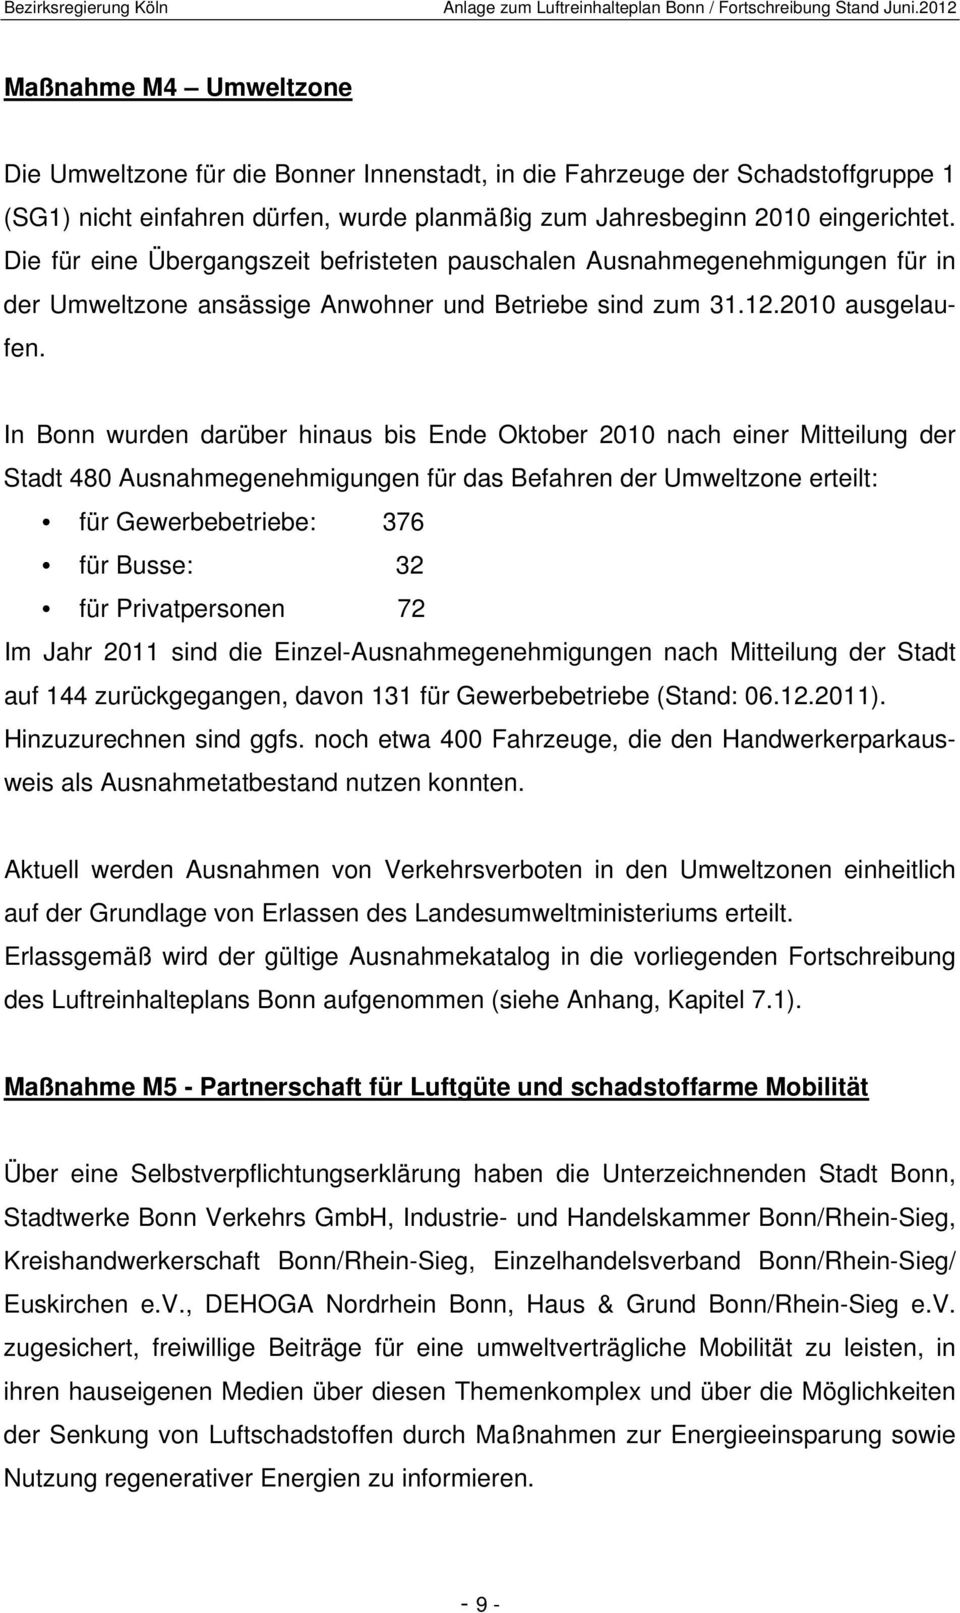 In Bonn wurden darüber hinaus bis Ende Oktober 2010 nach einer Mitteilung der Stadt 480 Ausnahmegenehmigungen für das Befahren der Umweltzone erteilt: für Gewerbebetriebe: 376 für Busse: 32 für